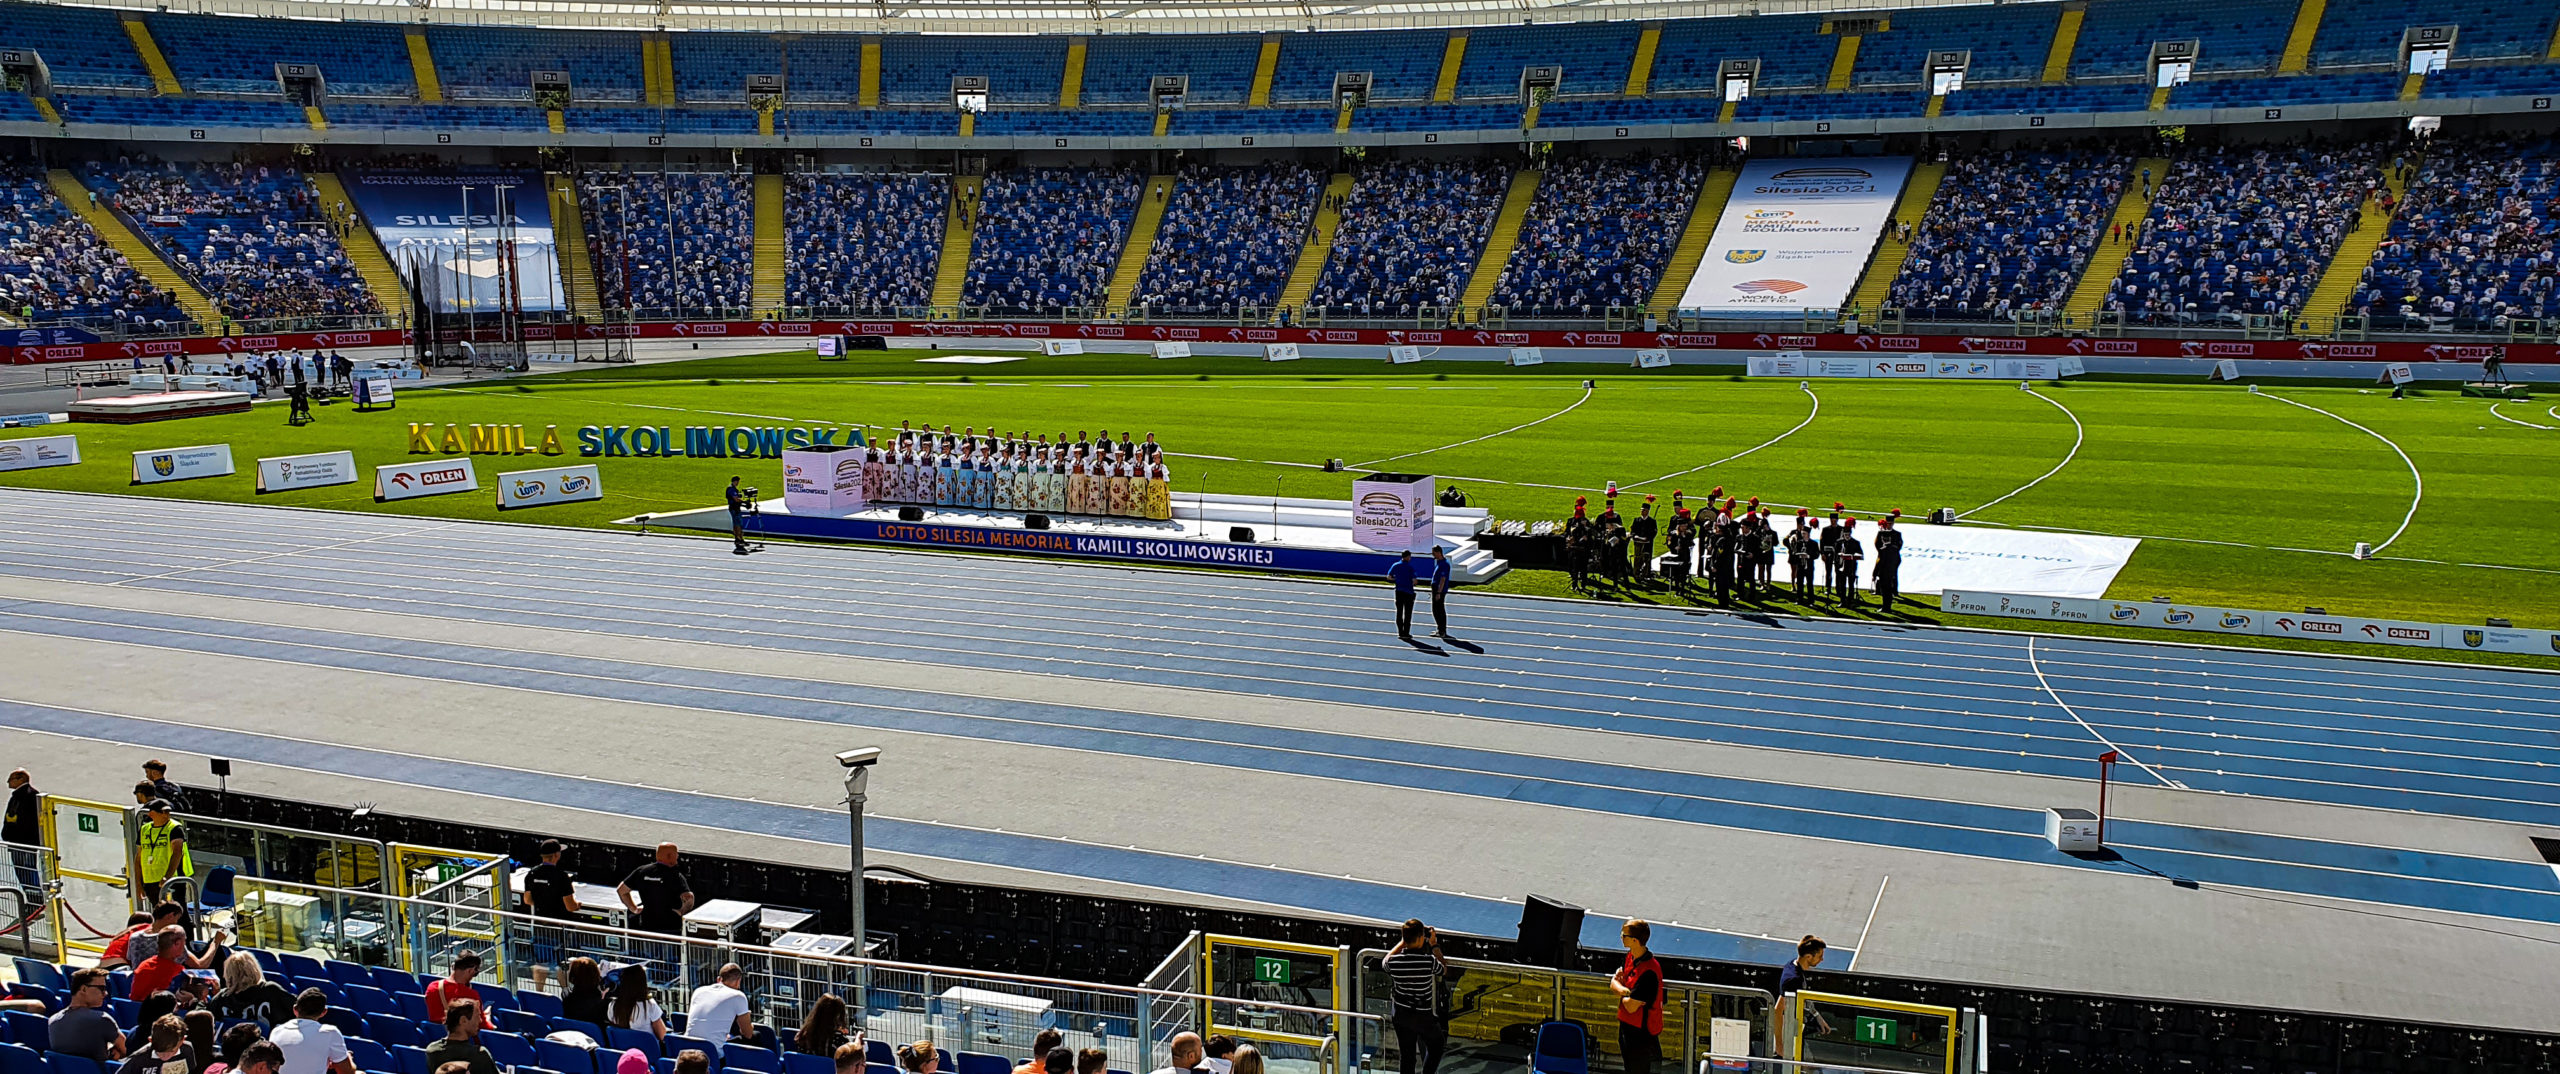 Ekrany LED zastosowane jako element sceny podczas Memoriału Kamili Skolimowskiej